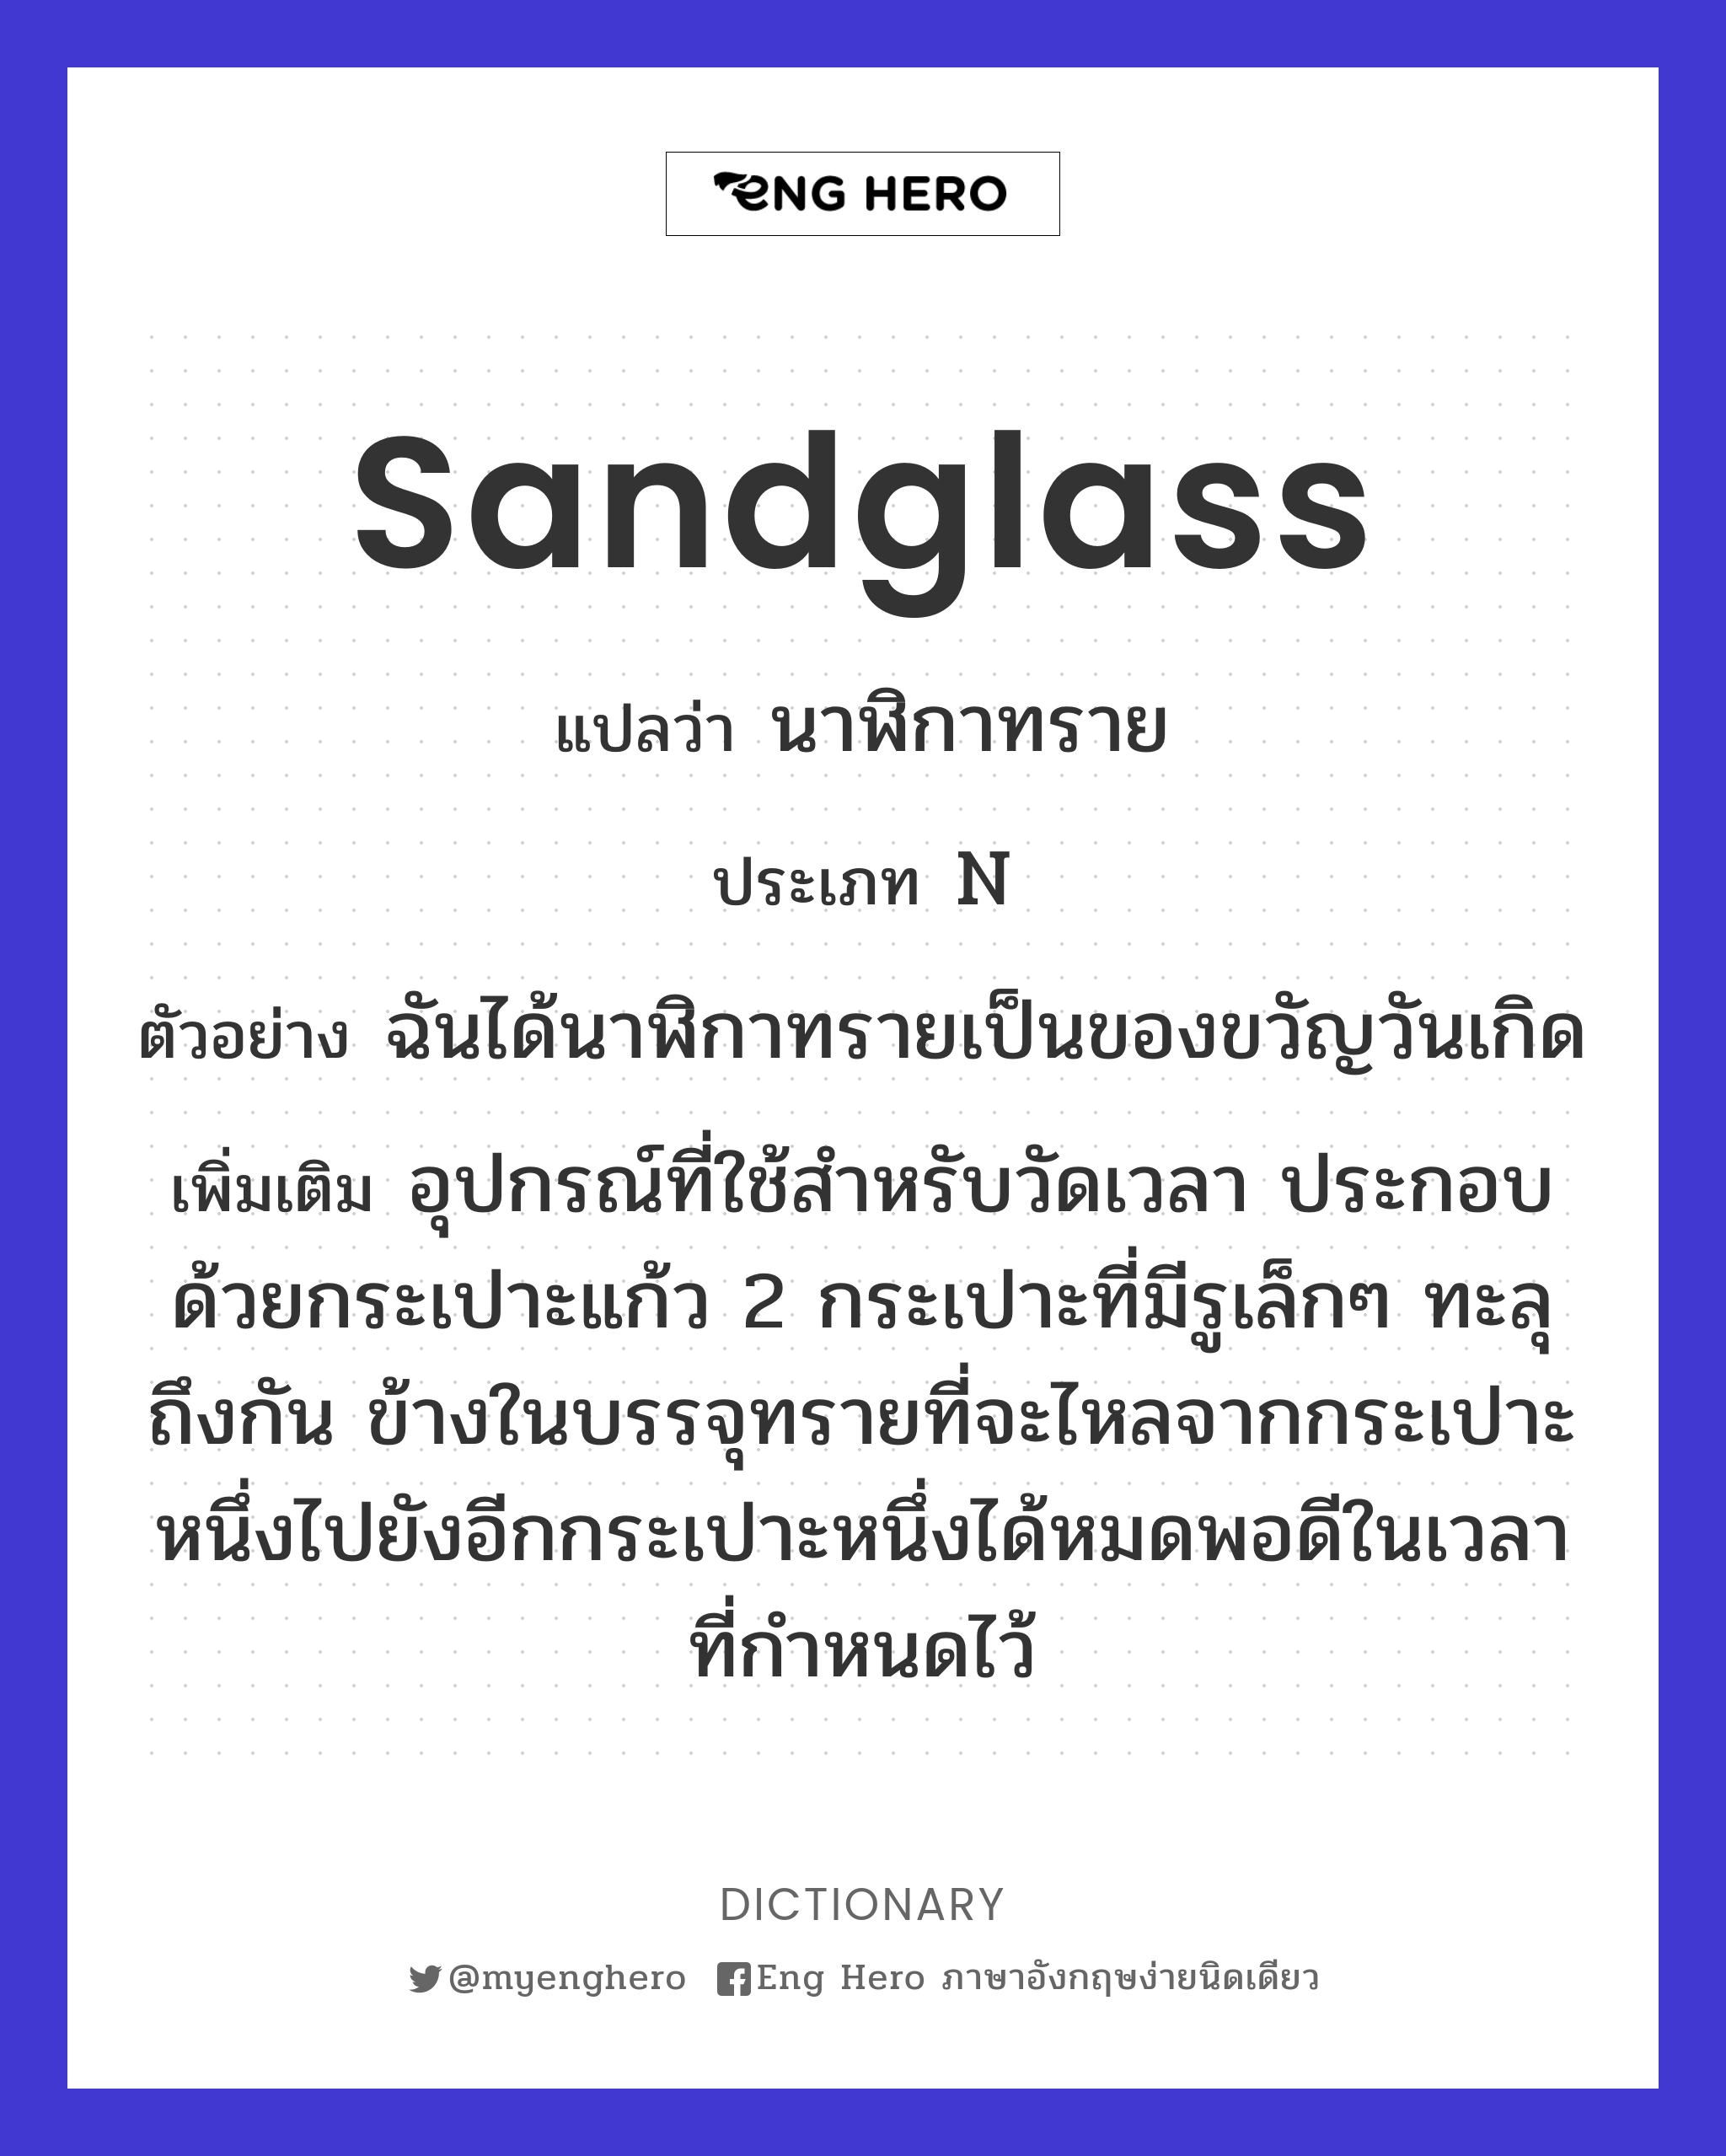 sandglass